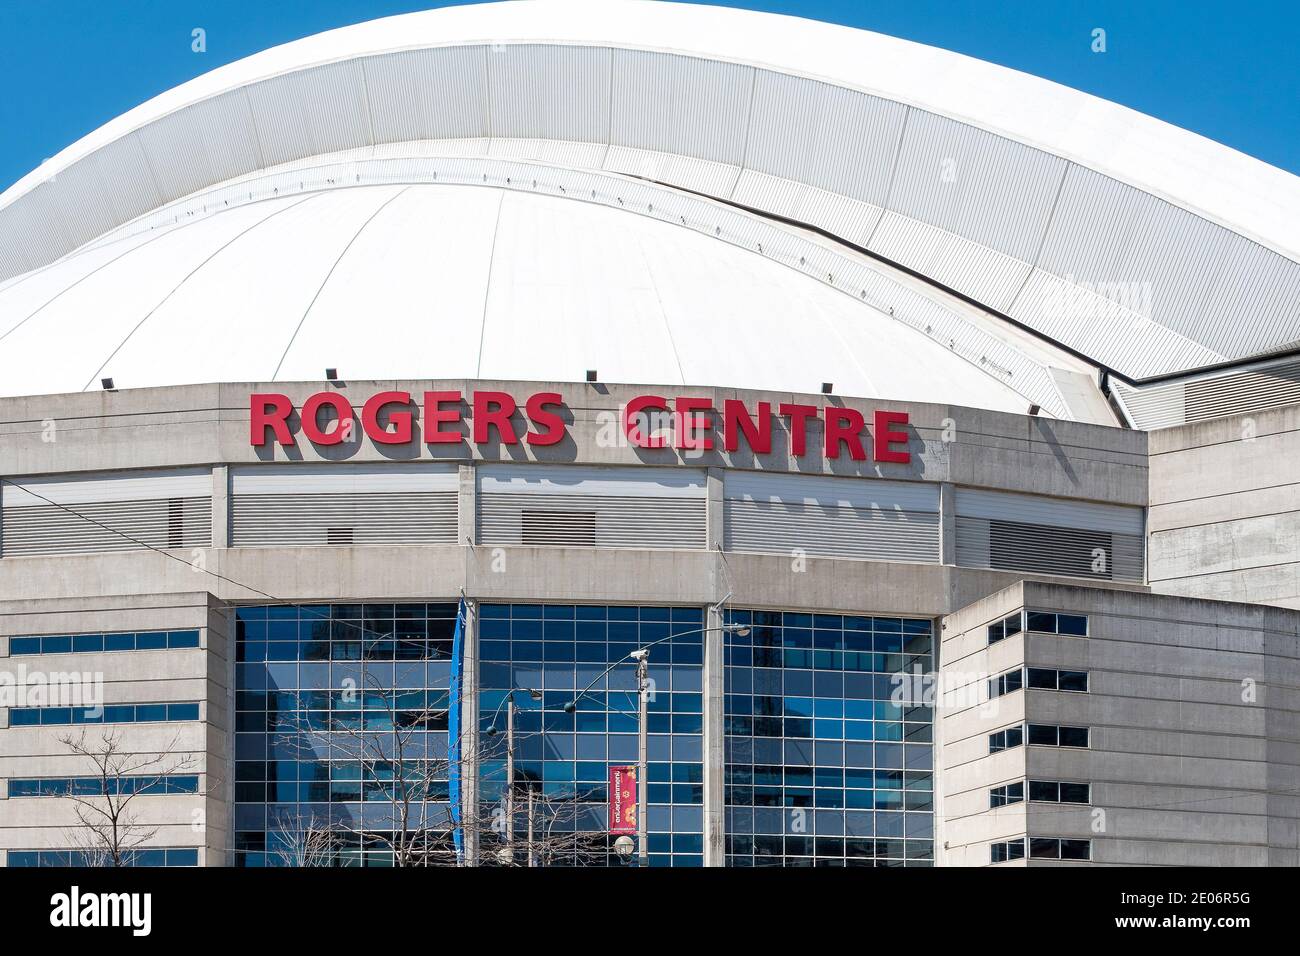 Roger entrée centrale, le monument est un stade multifonction situé au centre-ville de Toronto, c'est la maison pour les Blue Jays de Toronto parmi les autres équipes sportives. Banque D'Images